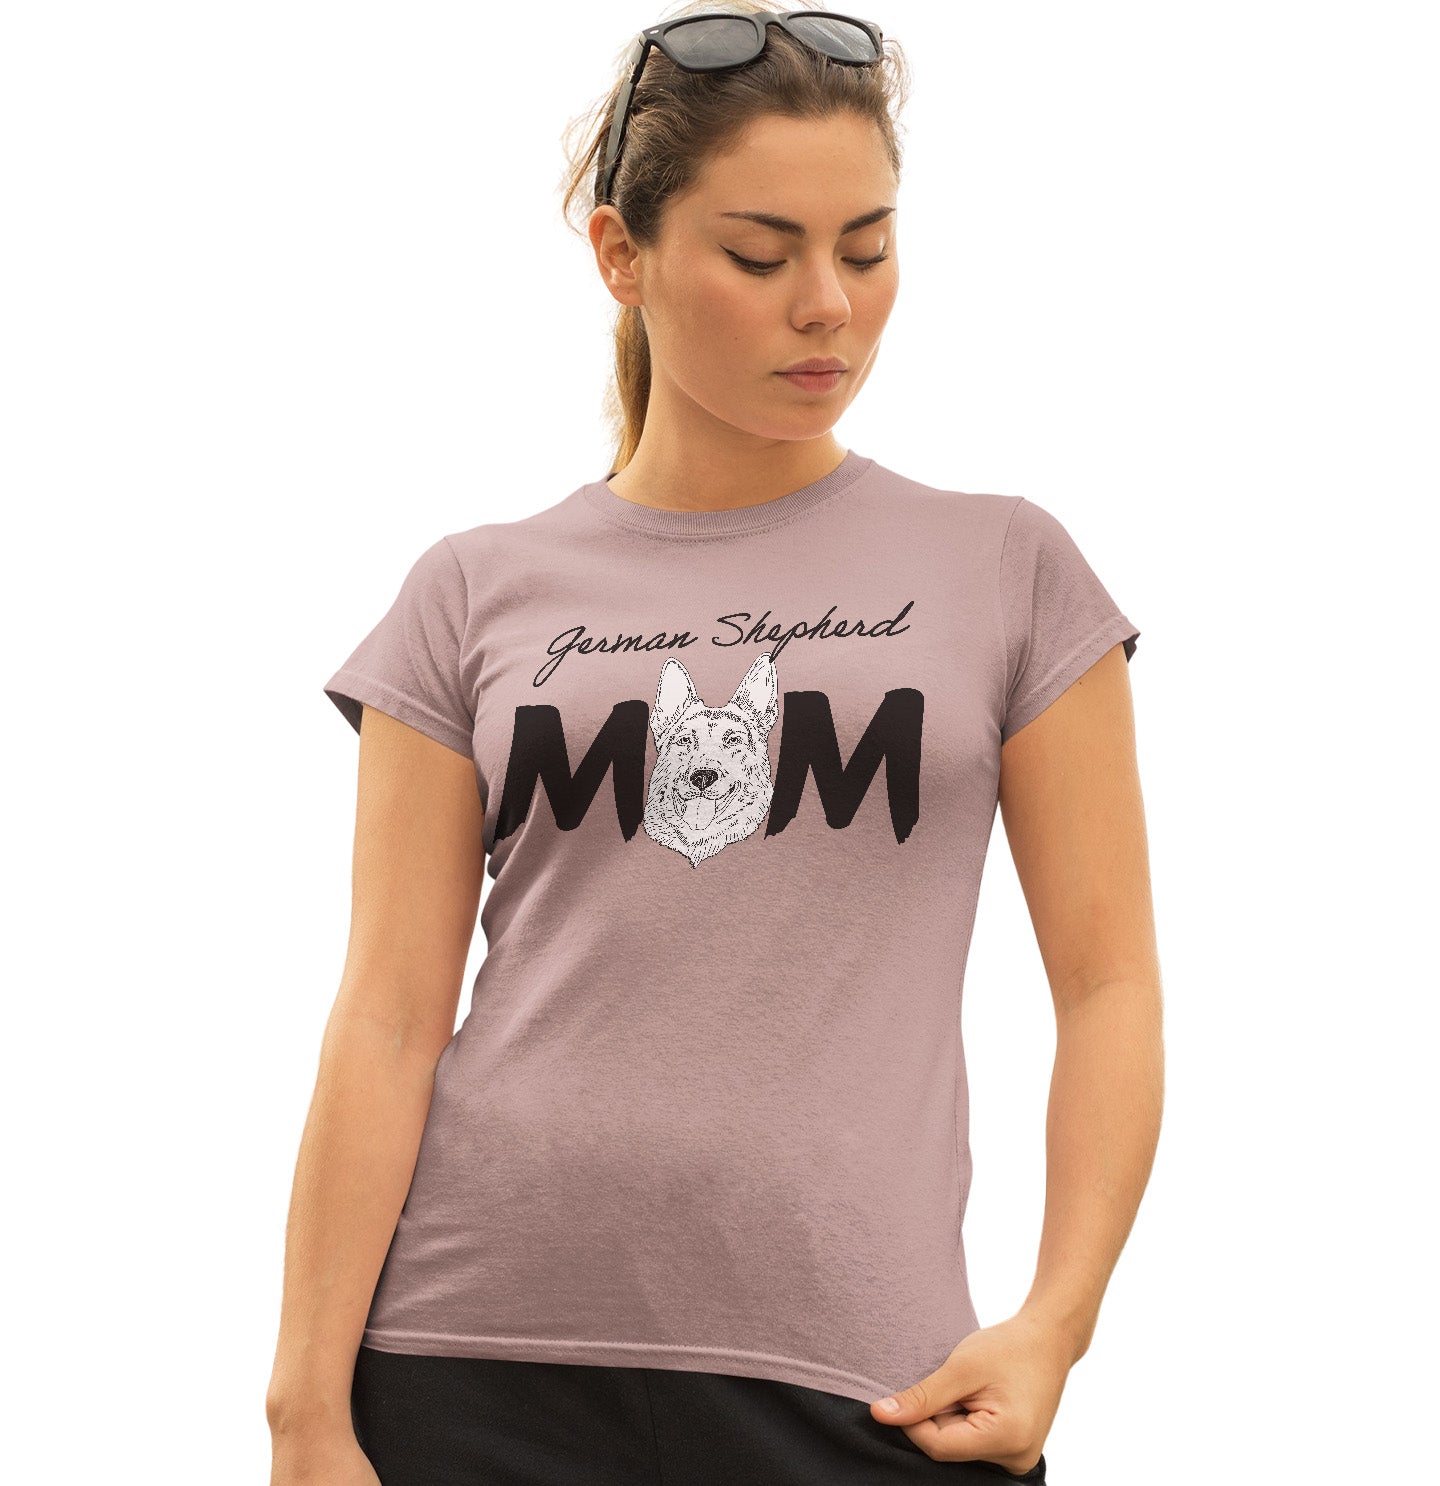 German Shepherd Breed Mom - Women's Fitted T-Shirt